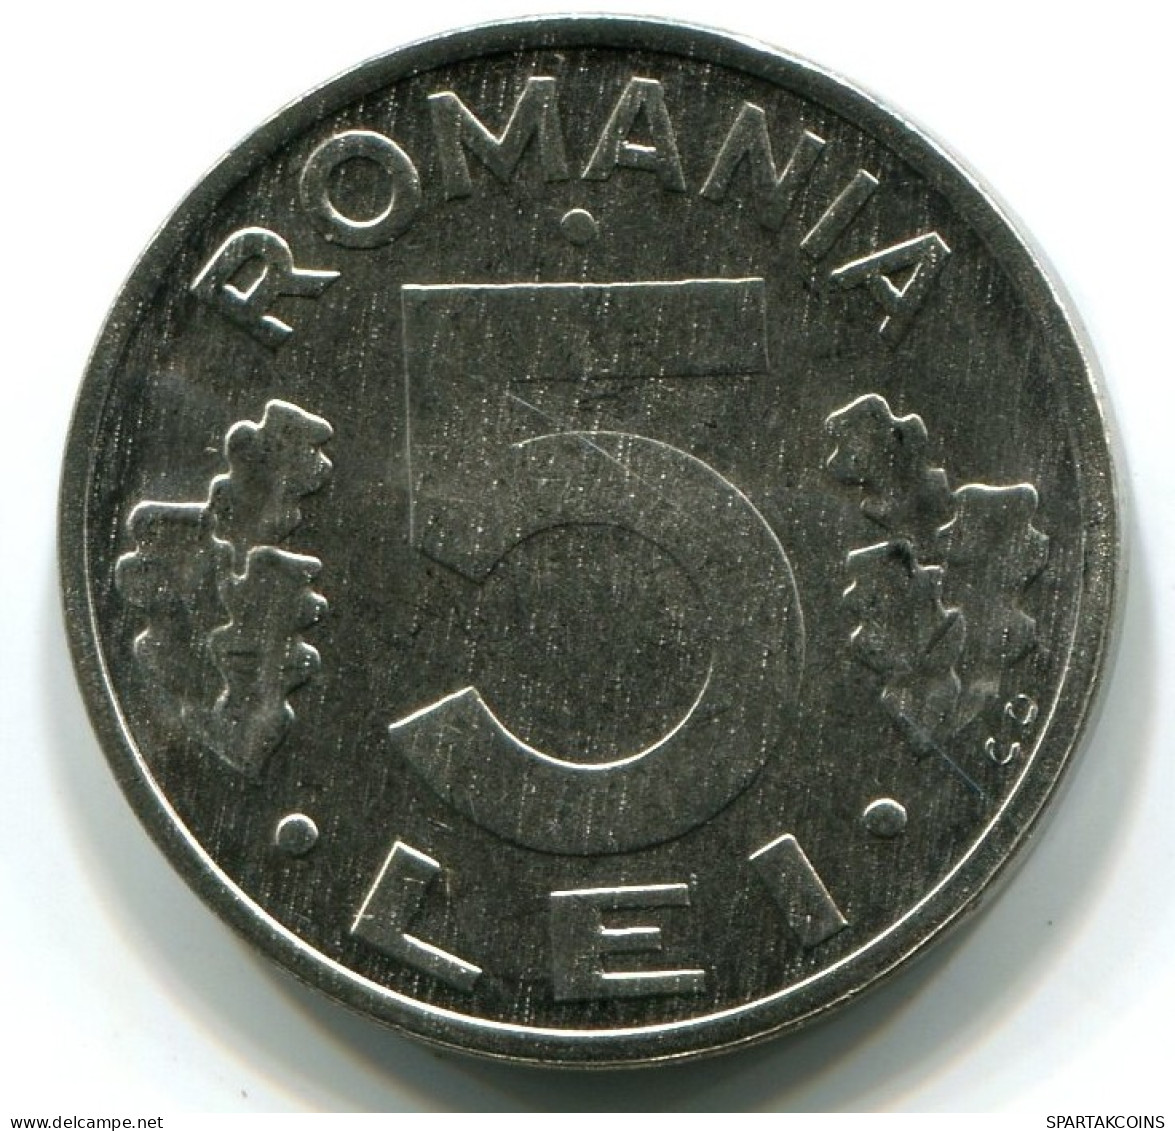 5 LEI 1992 RUMÄNIEN ROMANIA UNC Münze EAGLE COAT OF ARMS #W11207.D.A - Roemenië